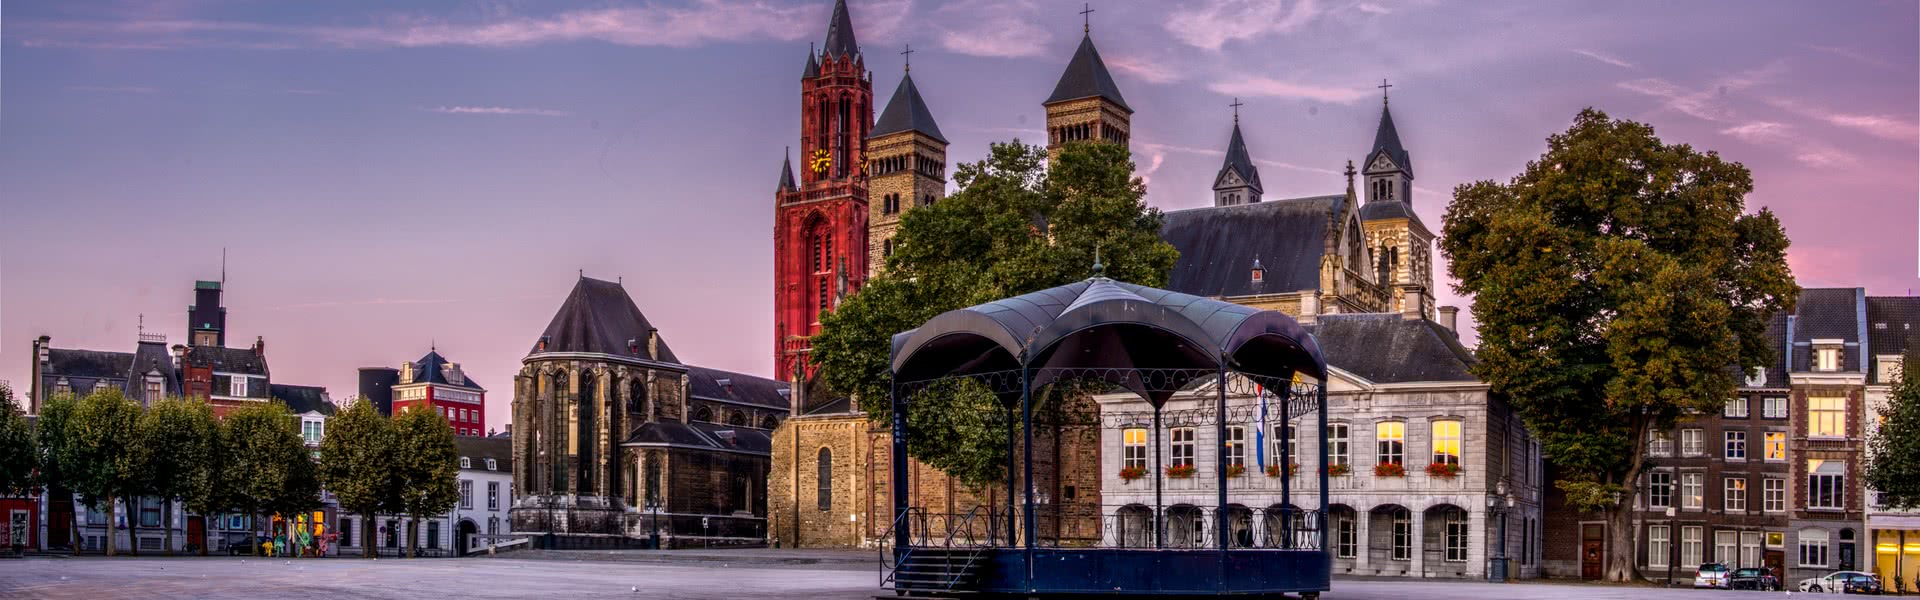 Coverbild von Maastricht